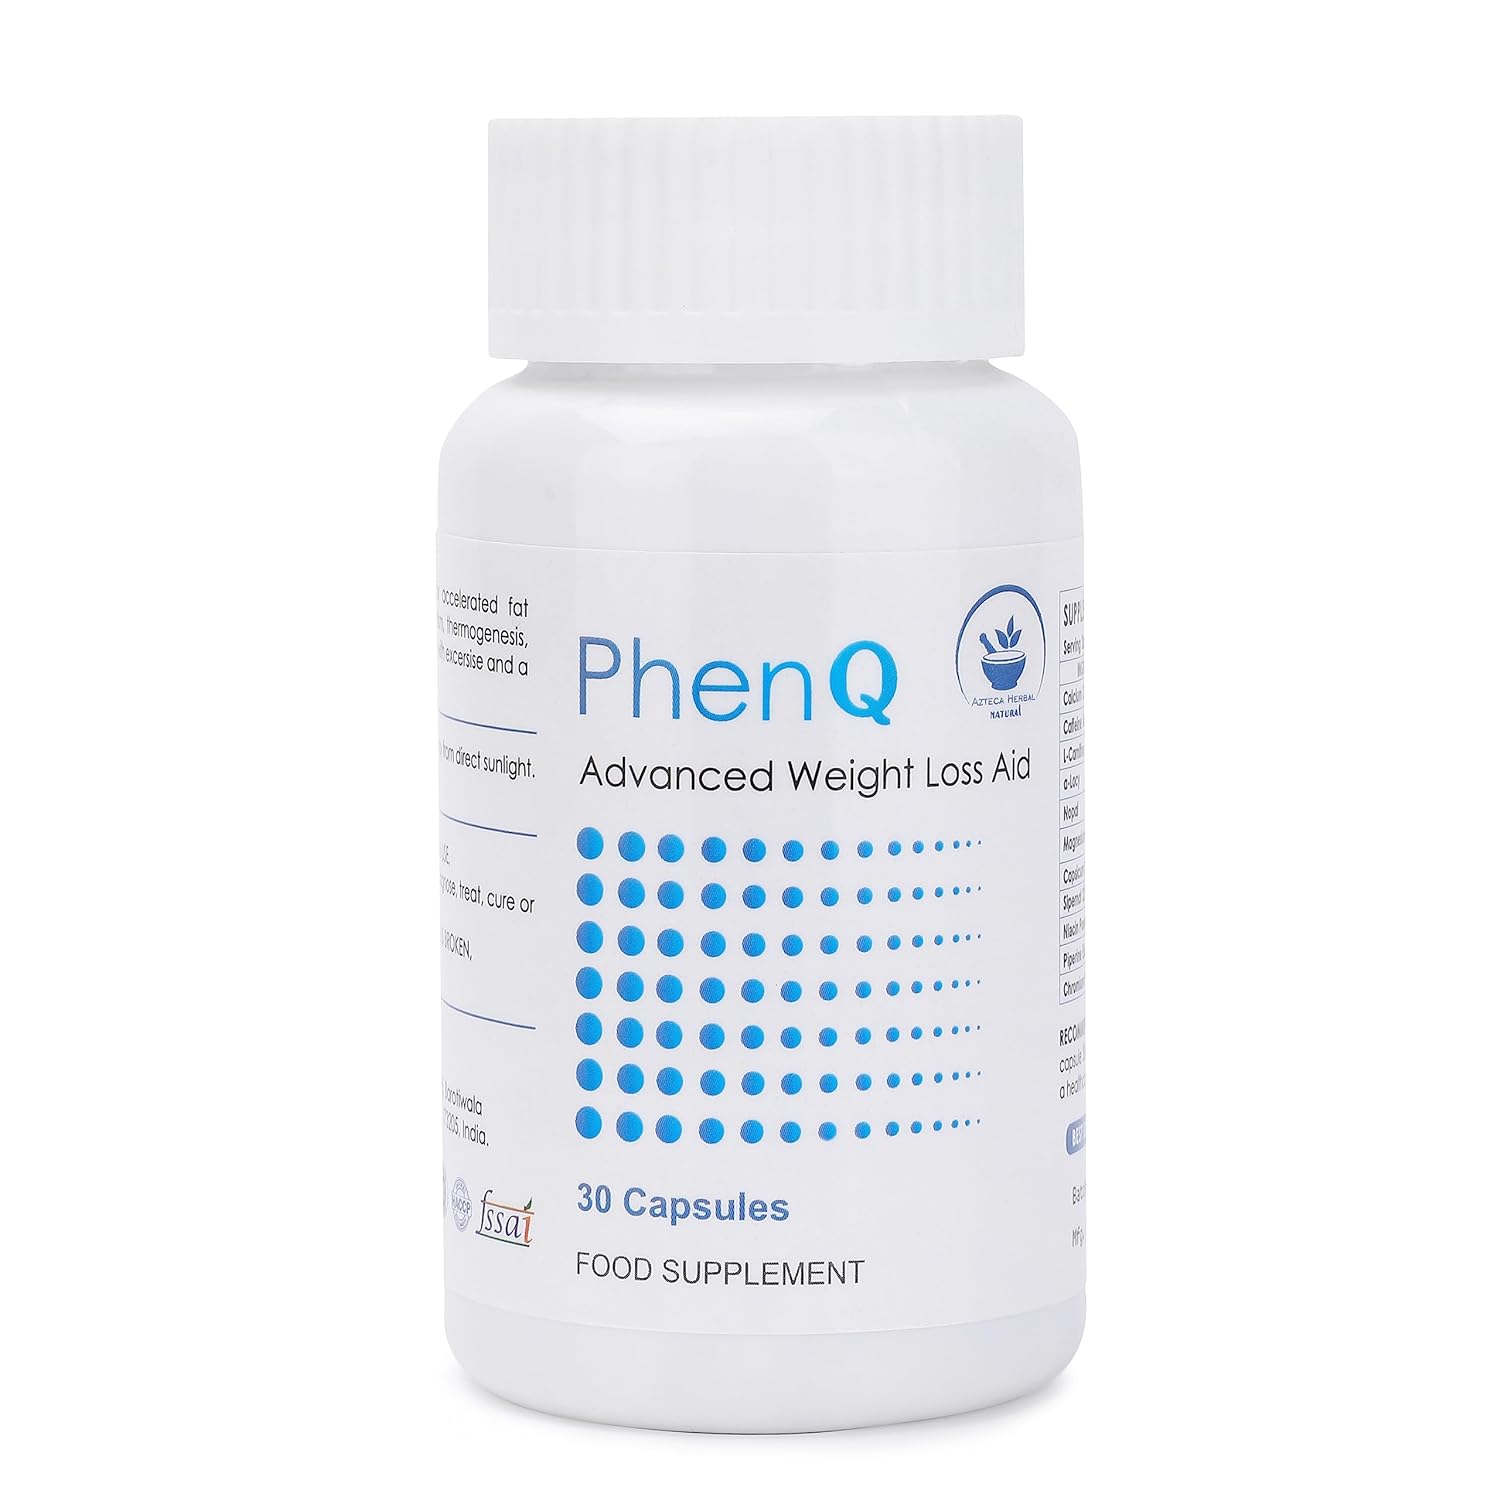 PhenQ avis : une pilule efficace pour perdre du poids